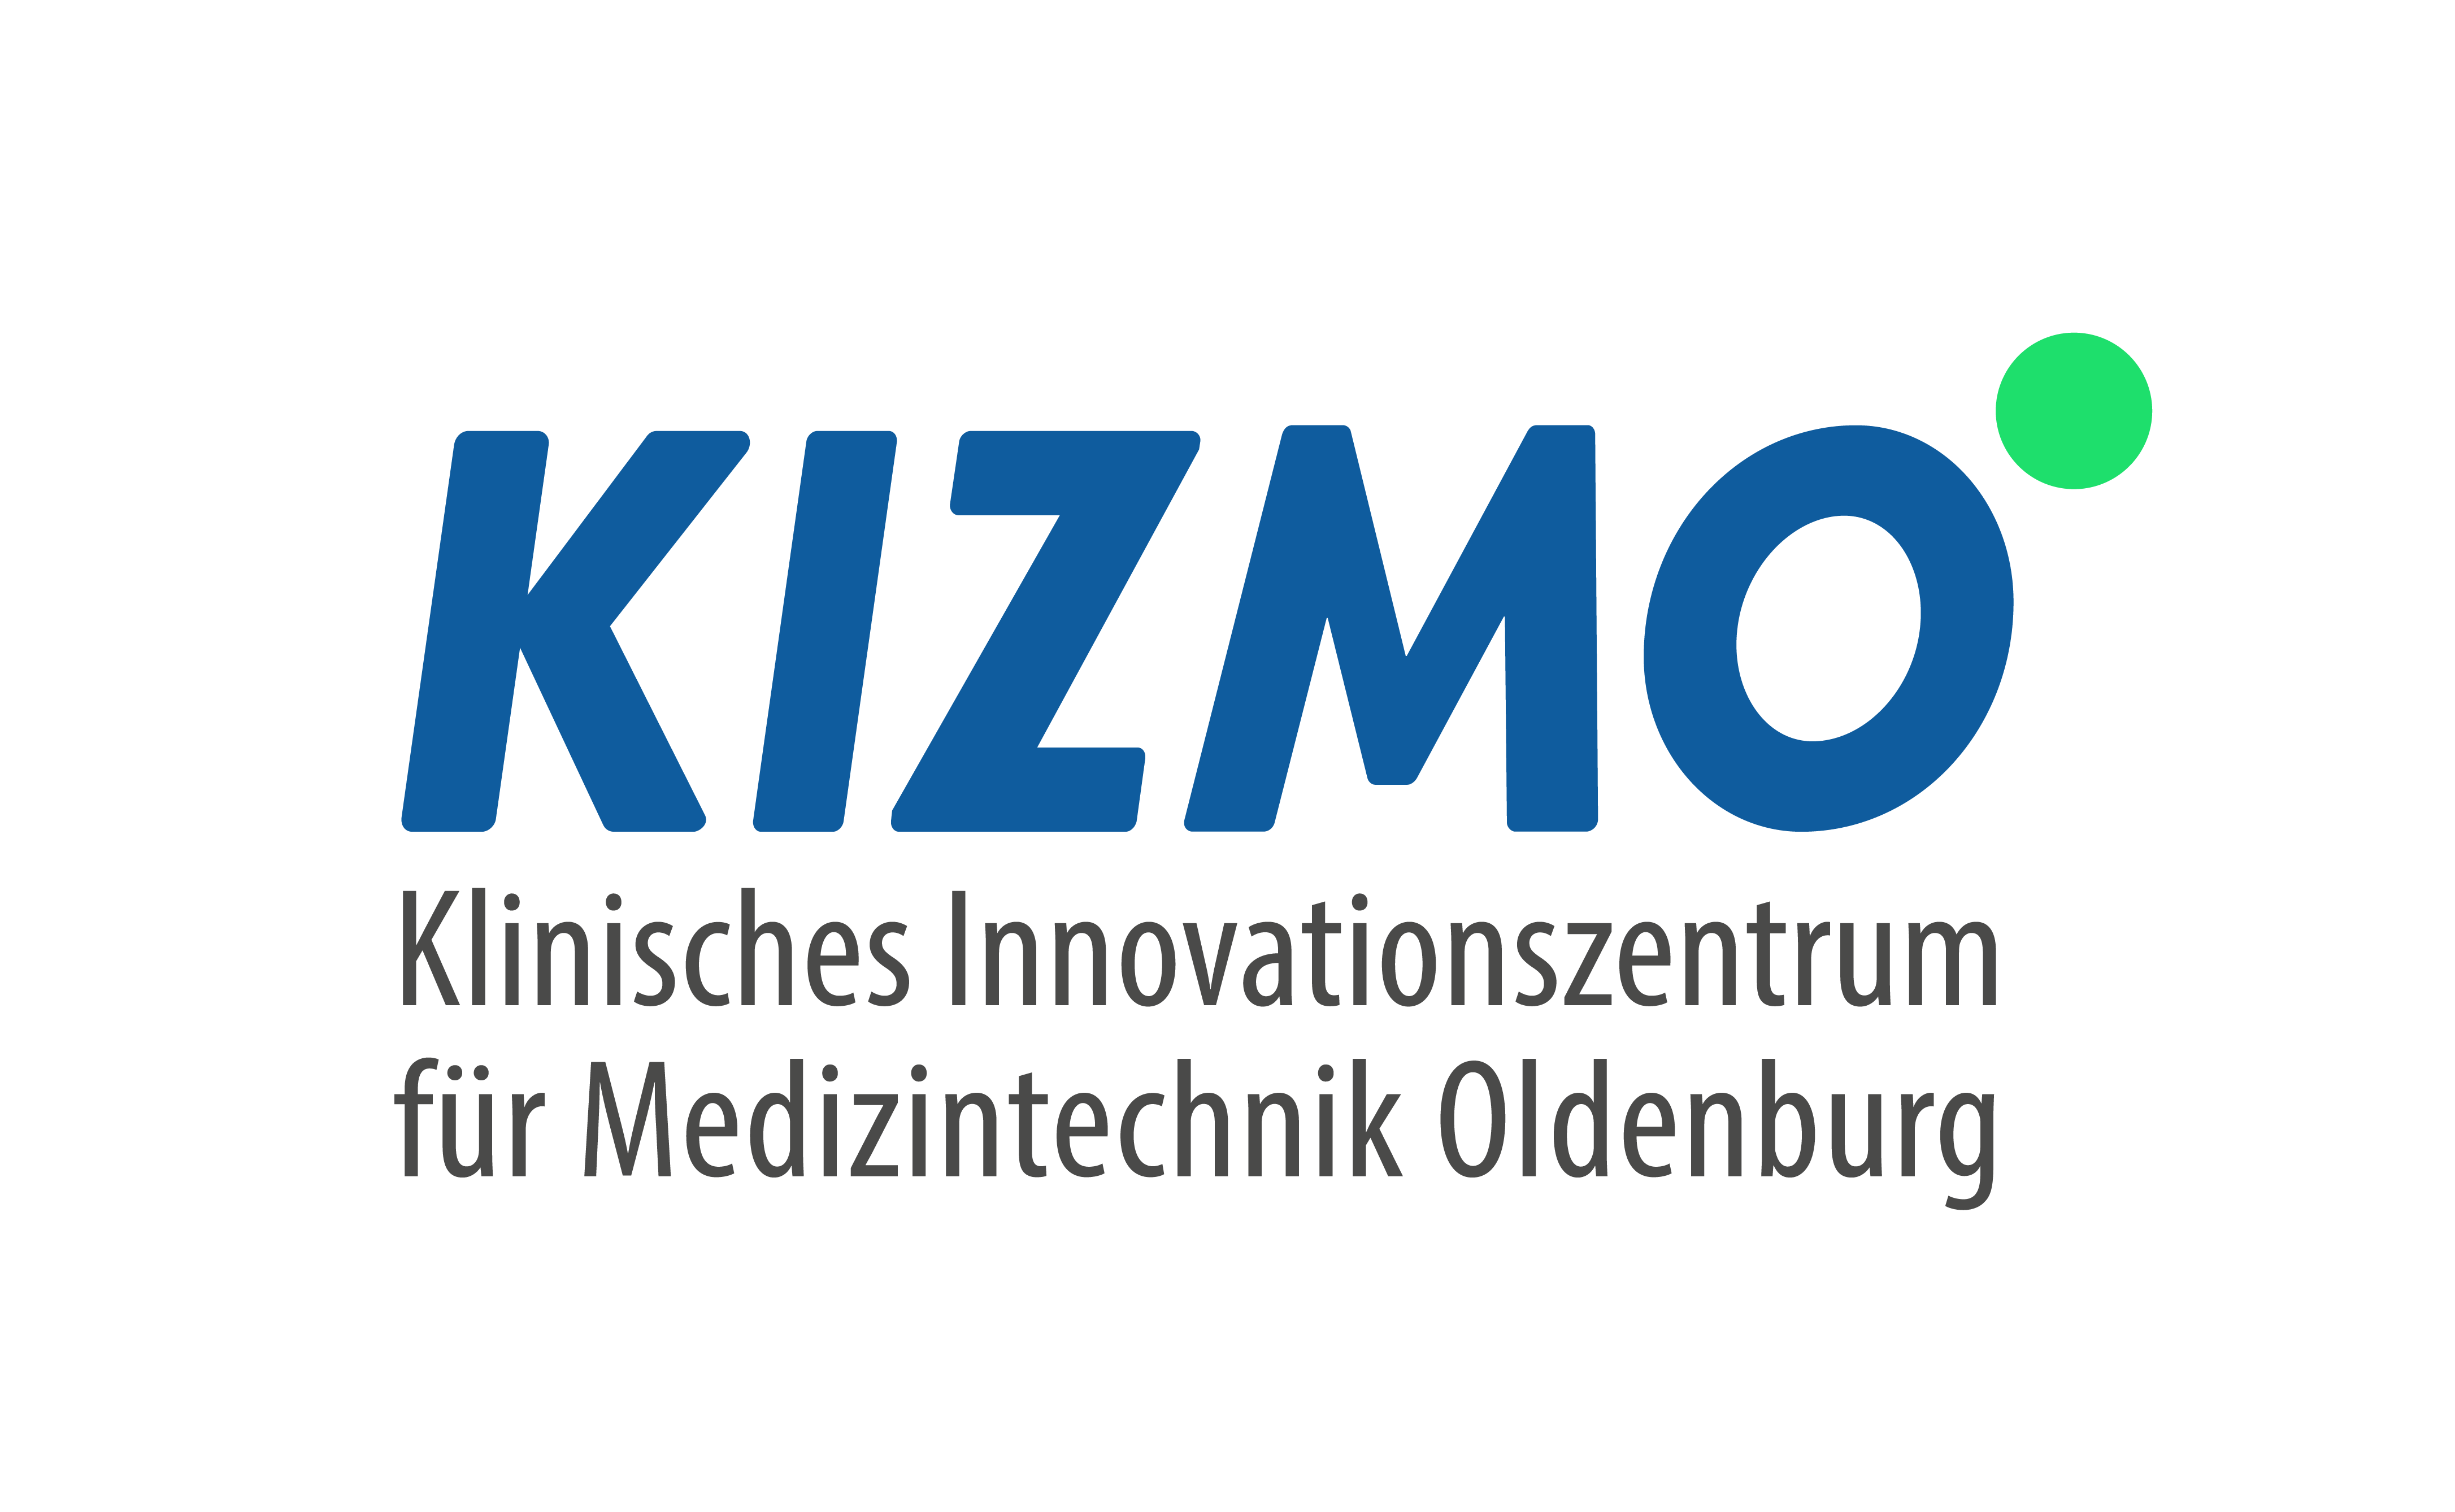 In collaboration with Klinisches Innovationszentrum für Medizintechnik Oldenburg